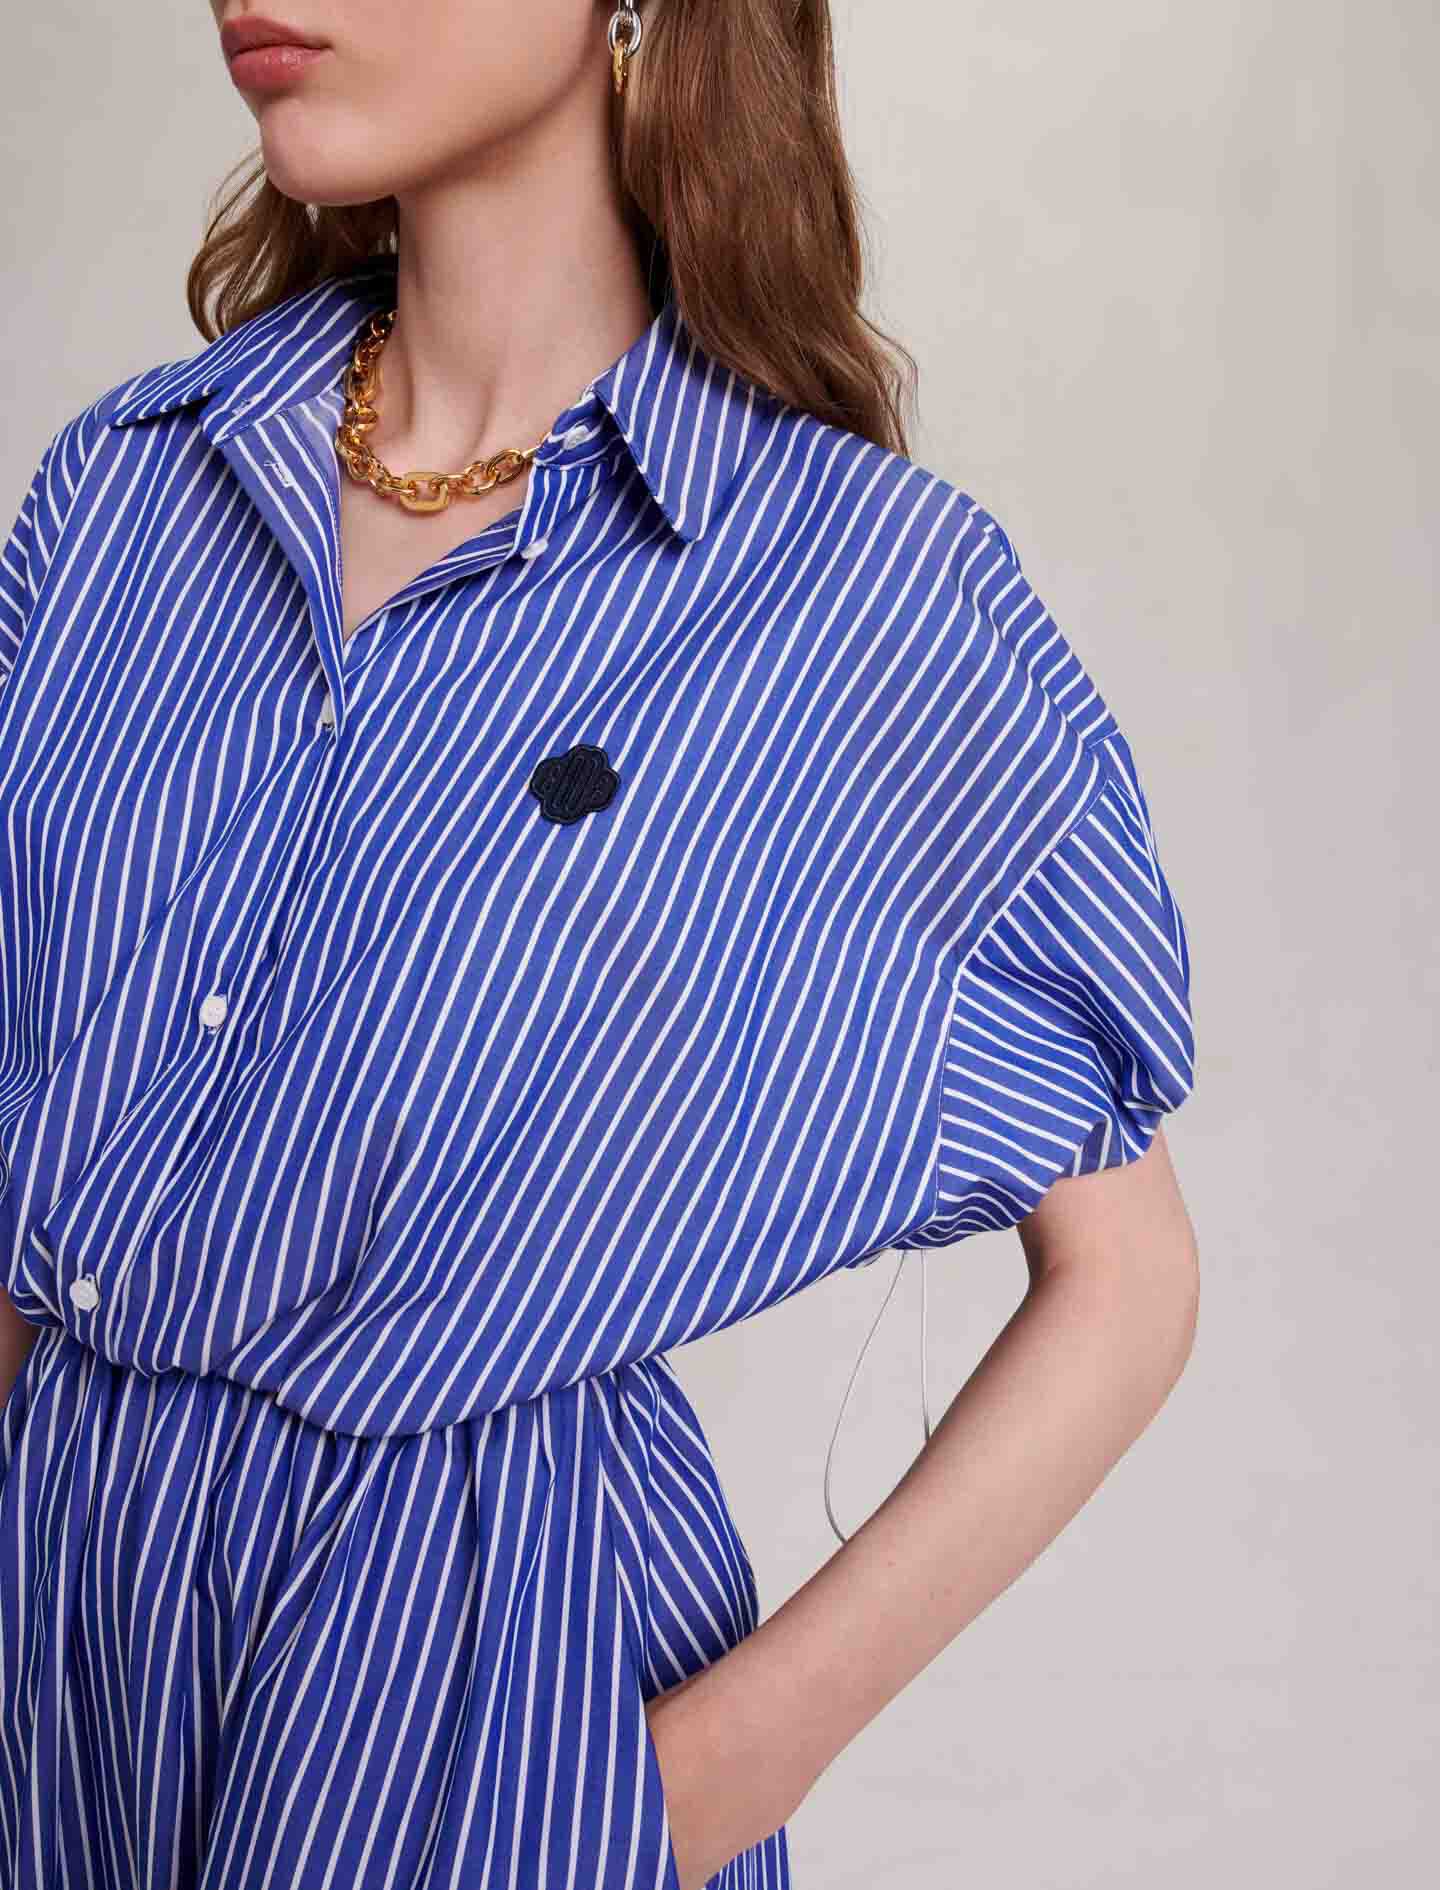 Bleu-long striped shirt dress